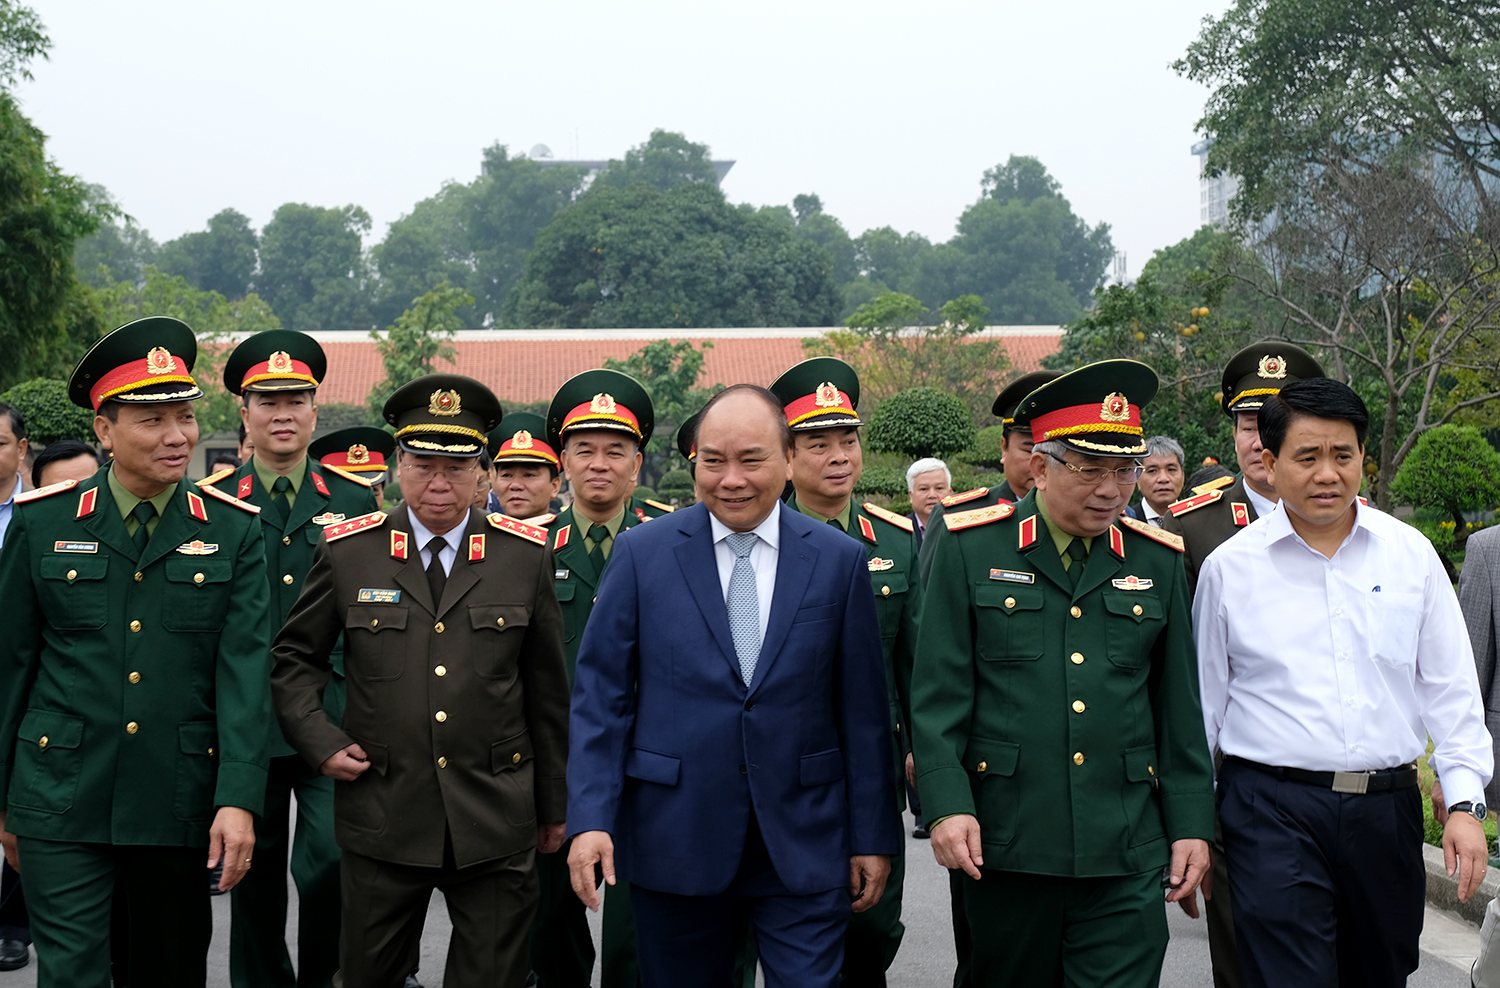 Thủ tướng kiểm tra việc tu bổ Lăng Chủ tịch Hồ Chí Minh